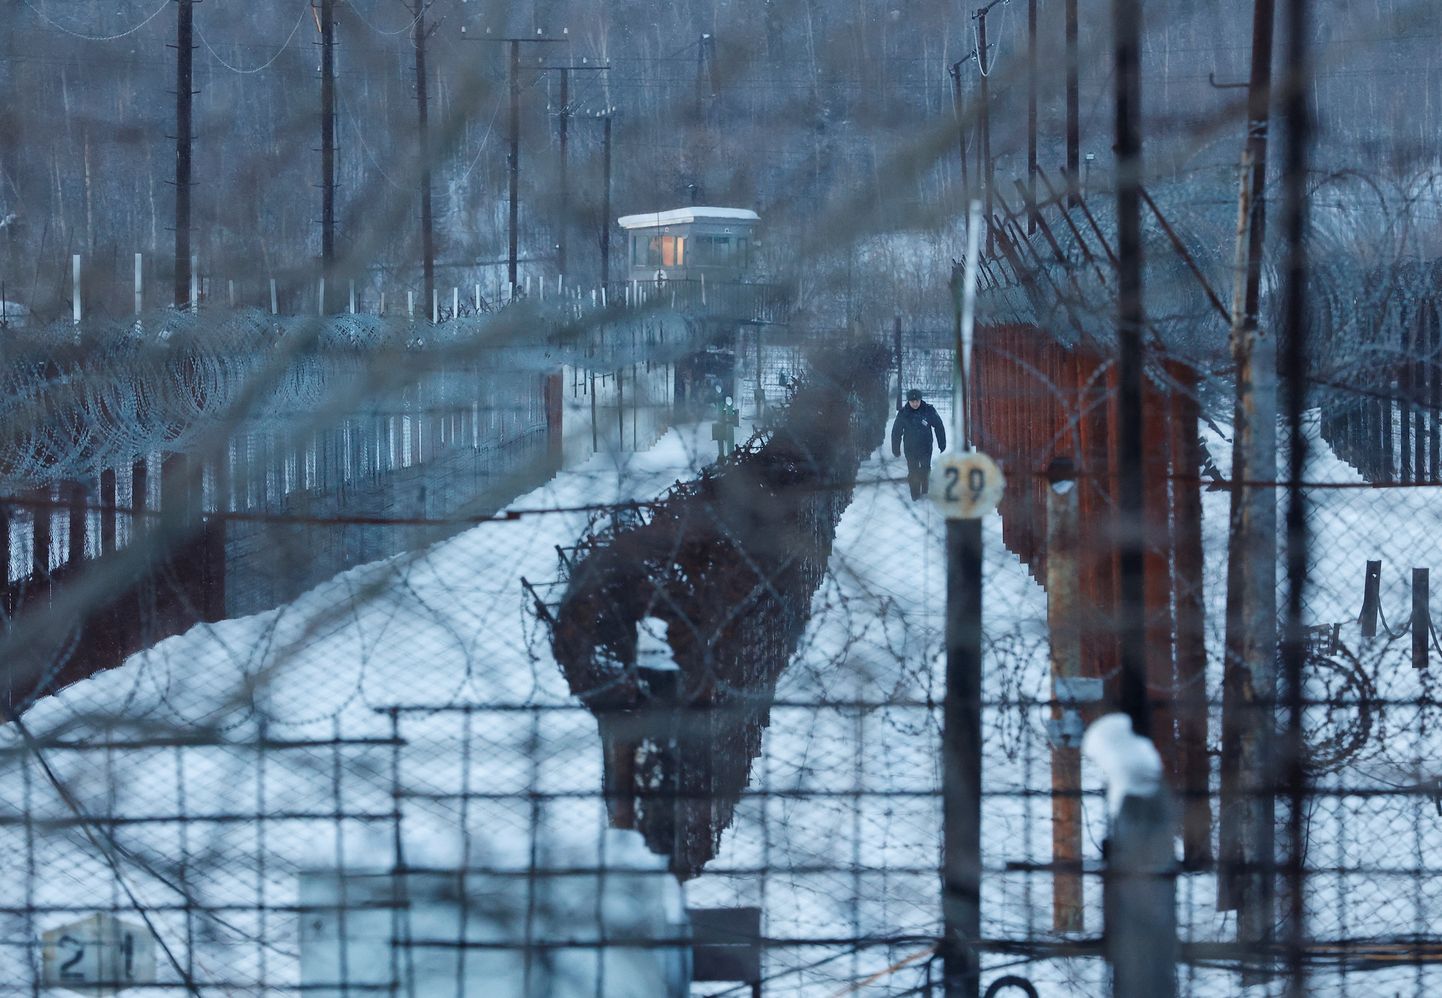 Venemaa karistuskoloonia Põhja-Venemaal, kus muuhulgas hoitakse ka poliitvange.